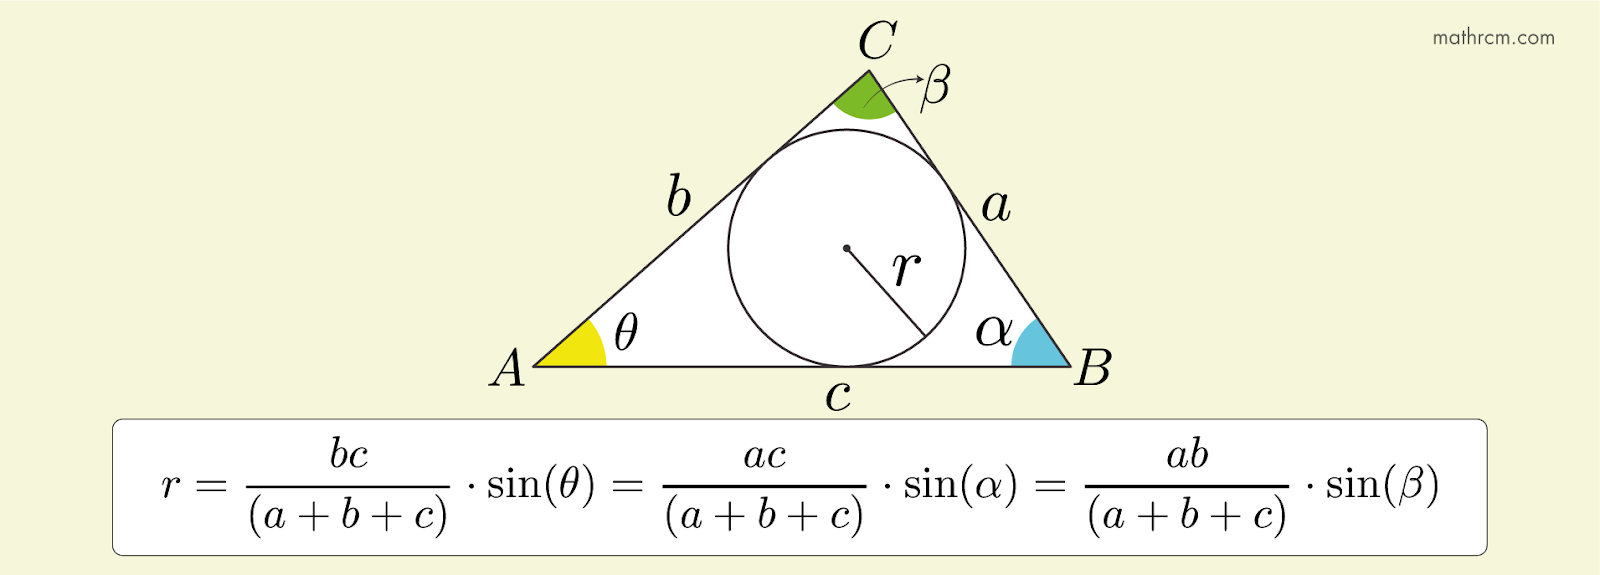 O comprimento do raio da circunferência, inscrita em um triângulo, em função do seno de um ângulo e dos lados do triângulo.